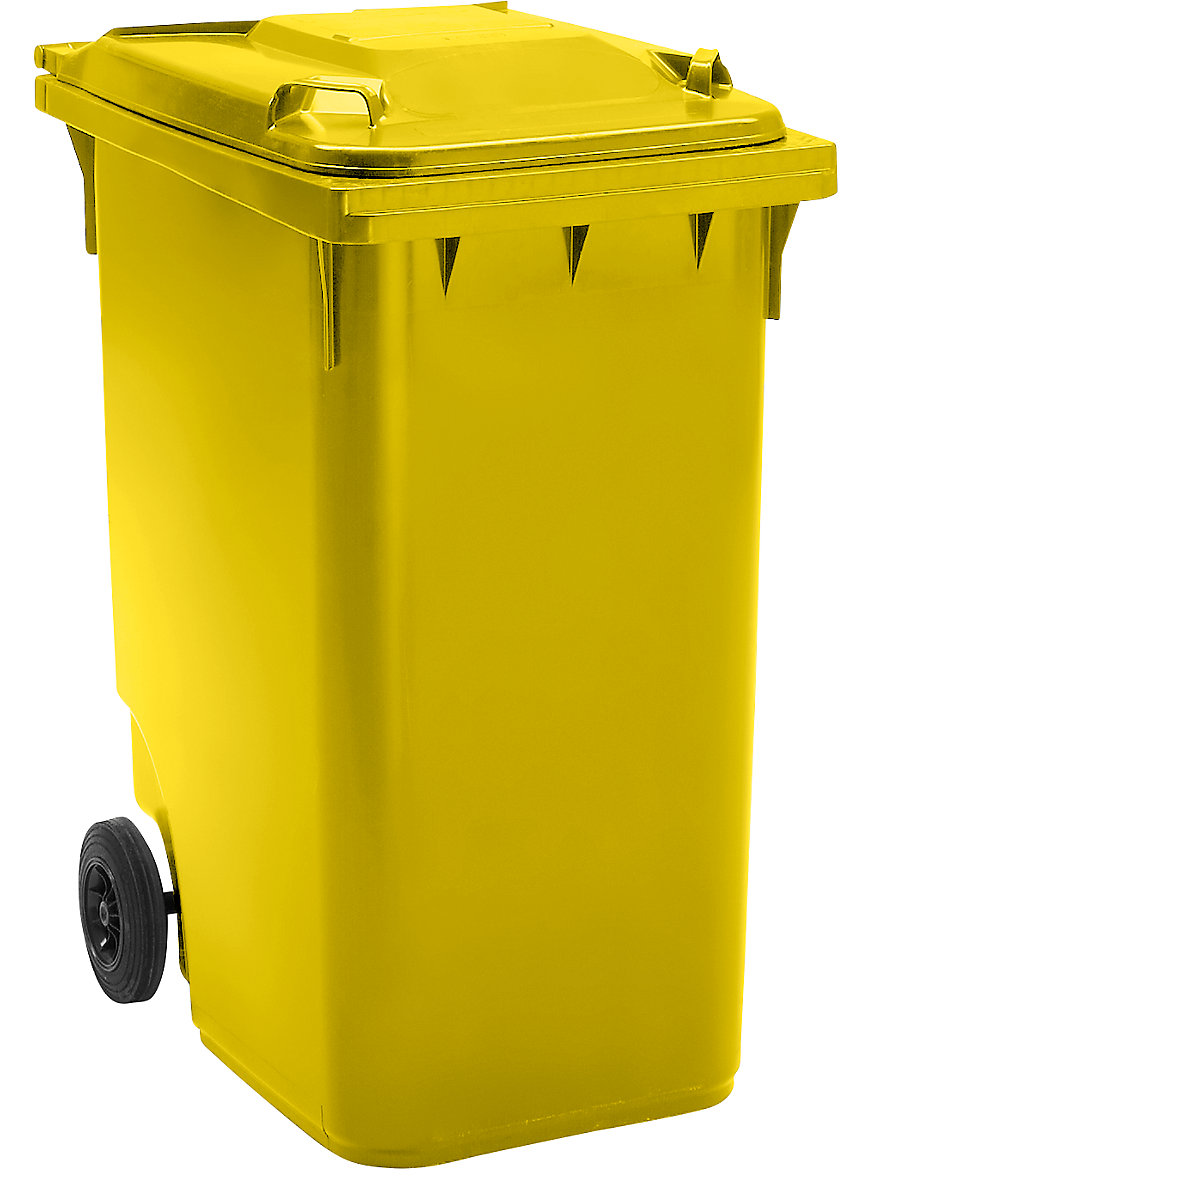 DIN EN 840 szabvány szerinti hulladékgyűjtő, űrtartalom 360 l, szé x ma x mé 665 x 1115 x 880 mm, kerék-Ø 200 mm, sárga, 5 db-tól